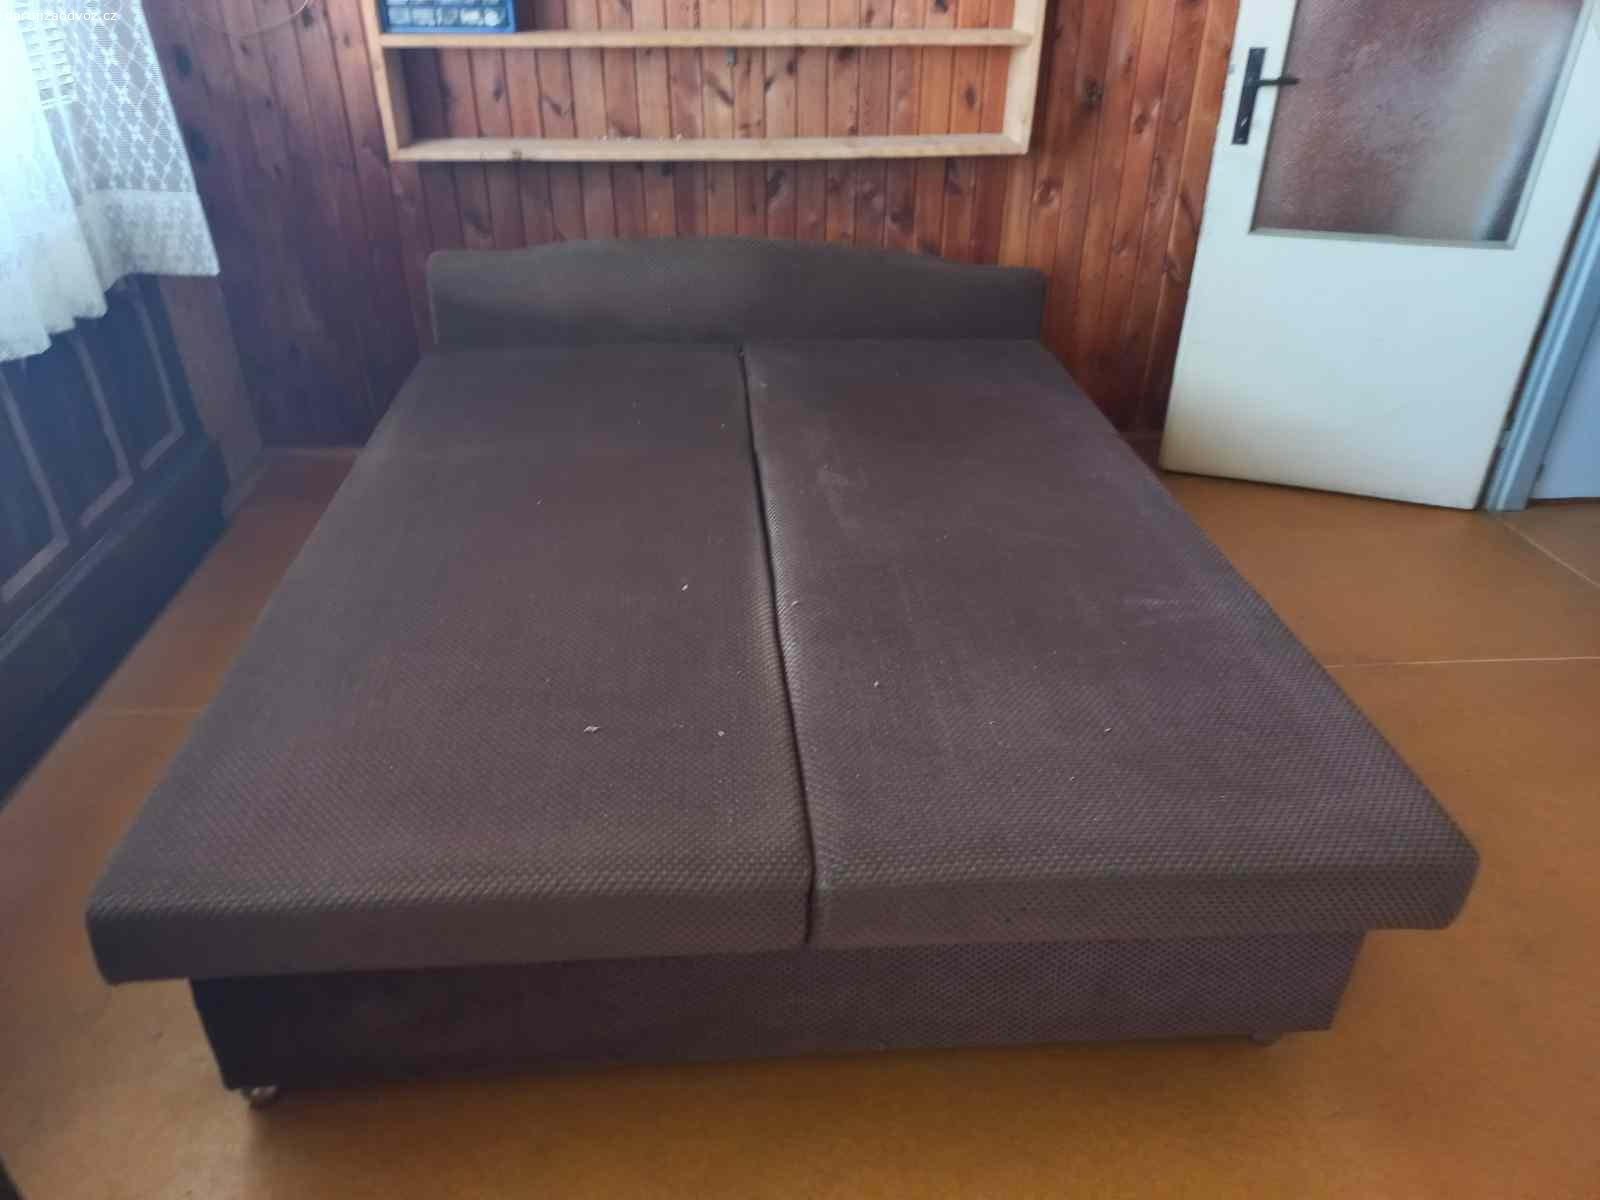 Daruji postel dvojlůžko. Daruji za odvoz postel 180x200cm dvojlůžko s úložným prostorem. Používané, ale ne poškozené ani špinavé.